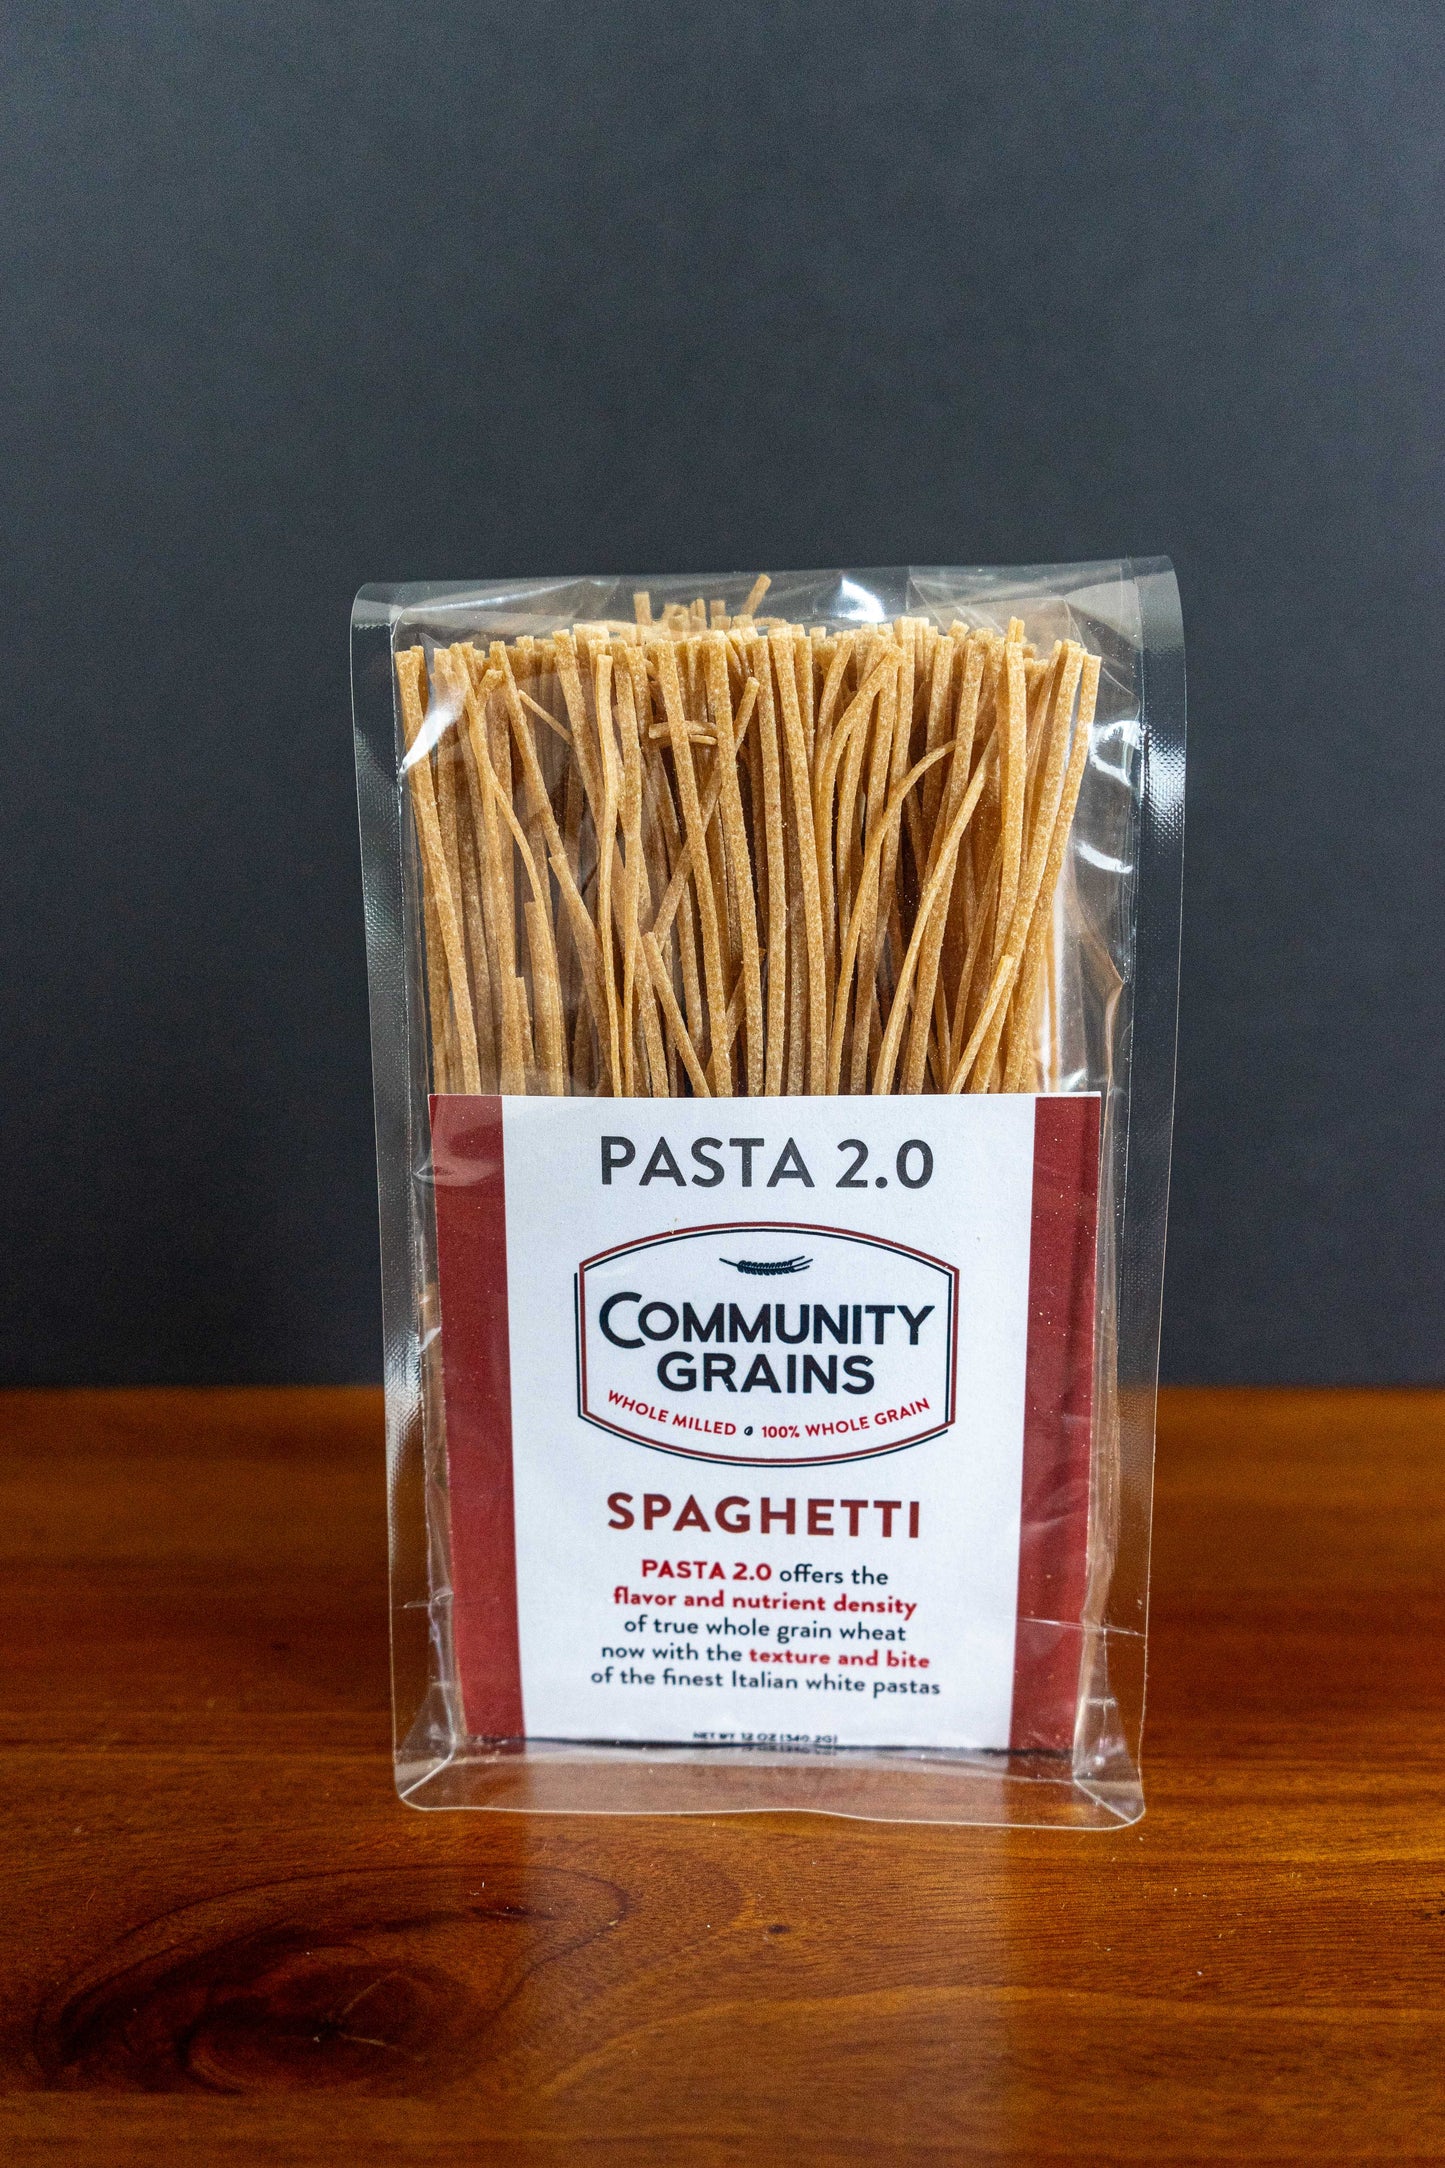 Spaghetti Pasta 2.0